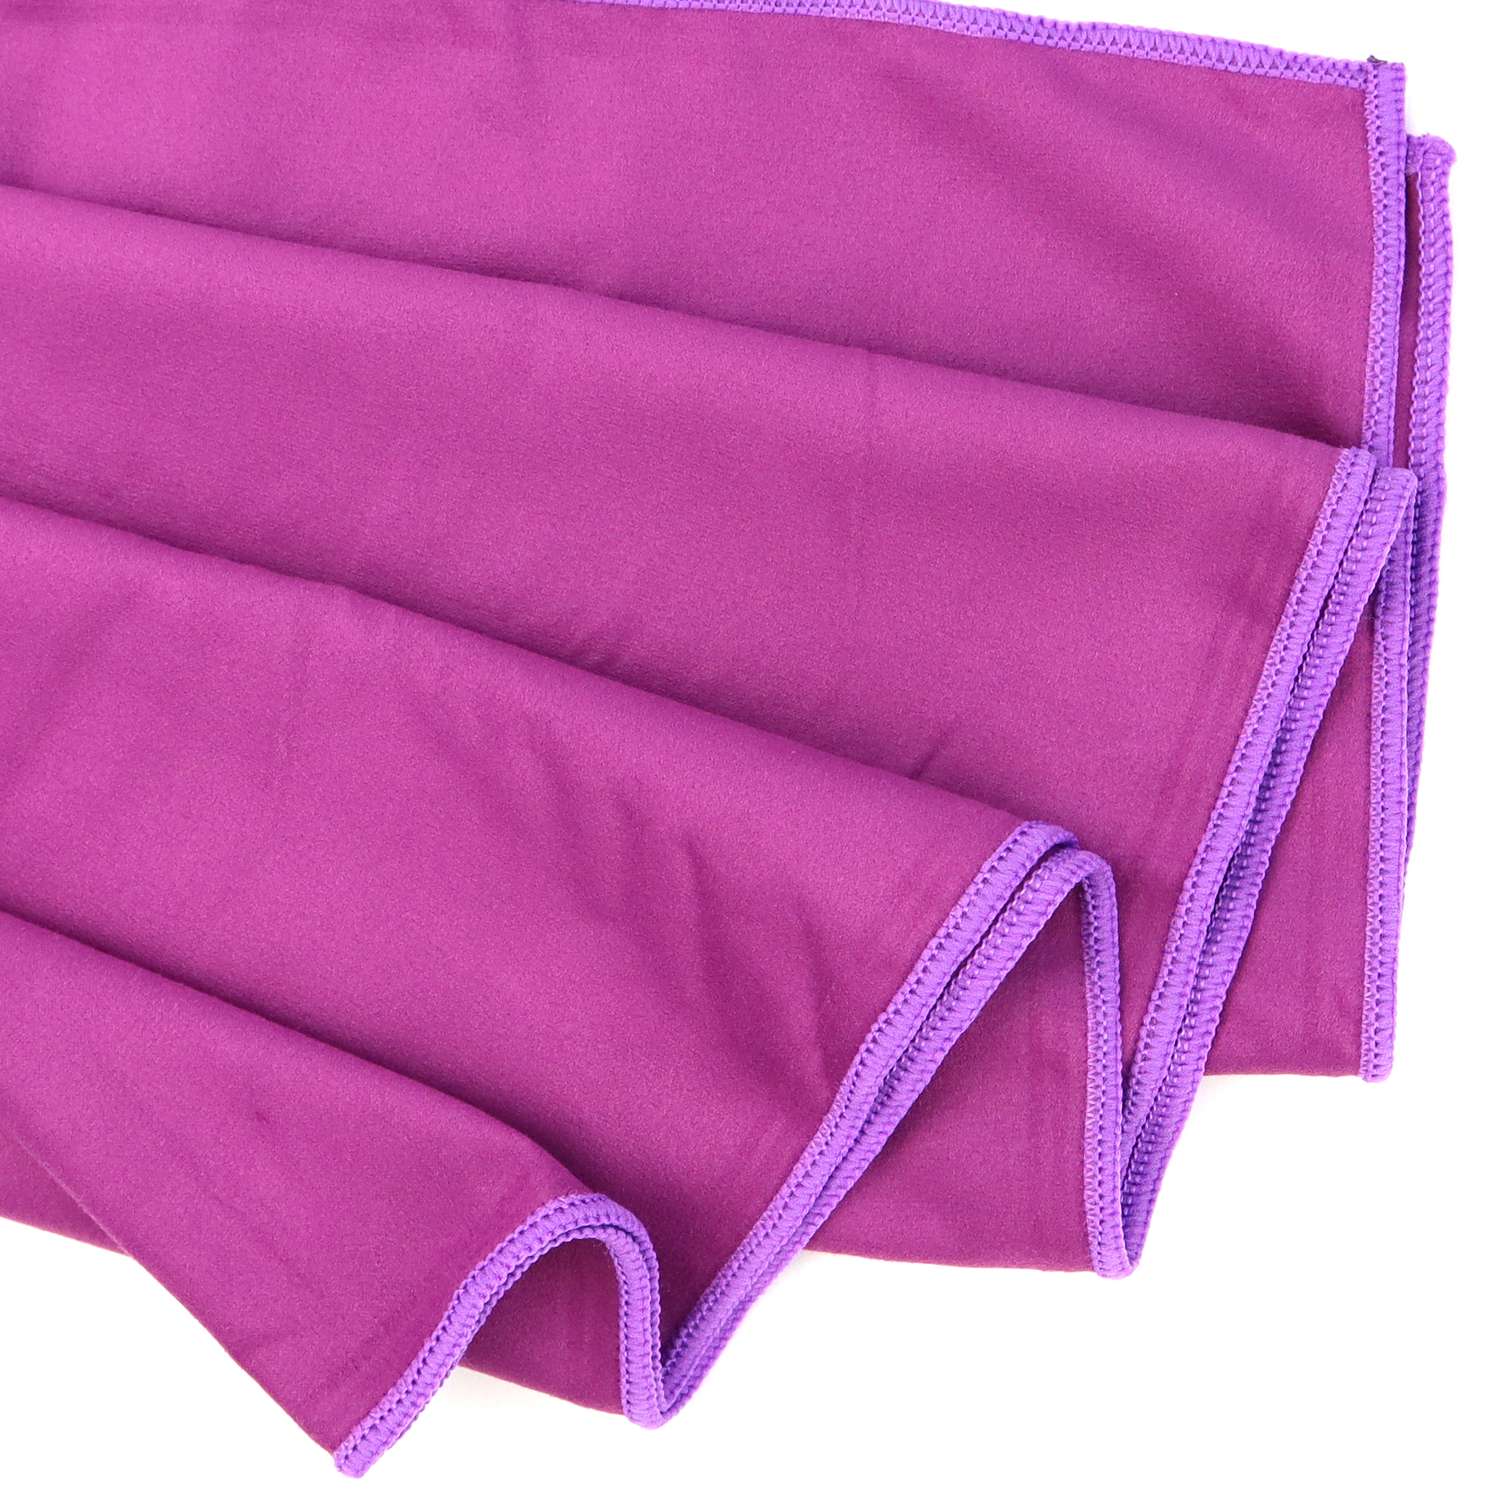 Полотенце ND Play спортивное из микрофибры 76*152 см цвет фиолетовый - фото 4